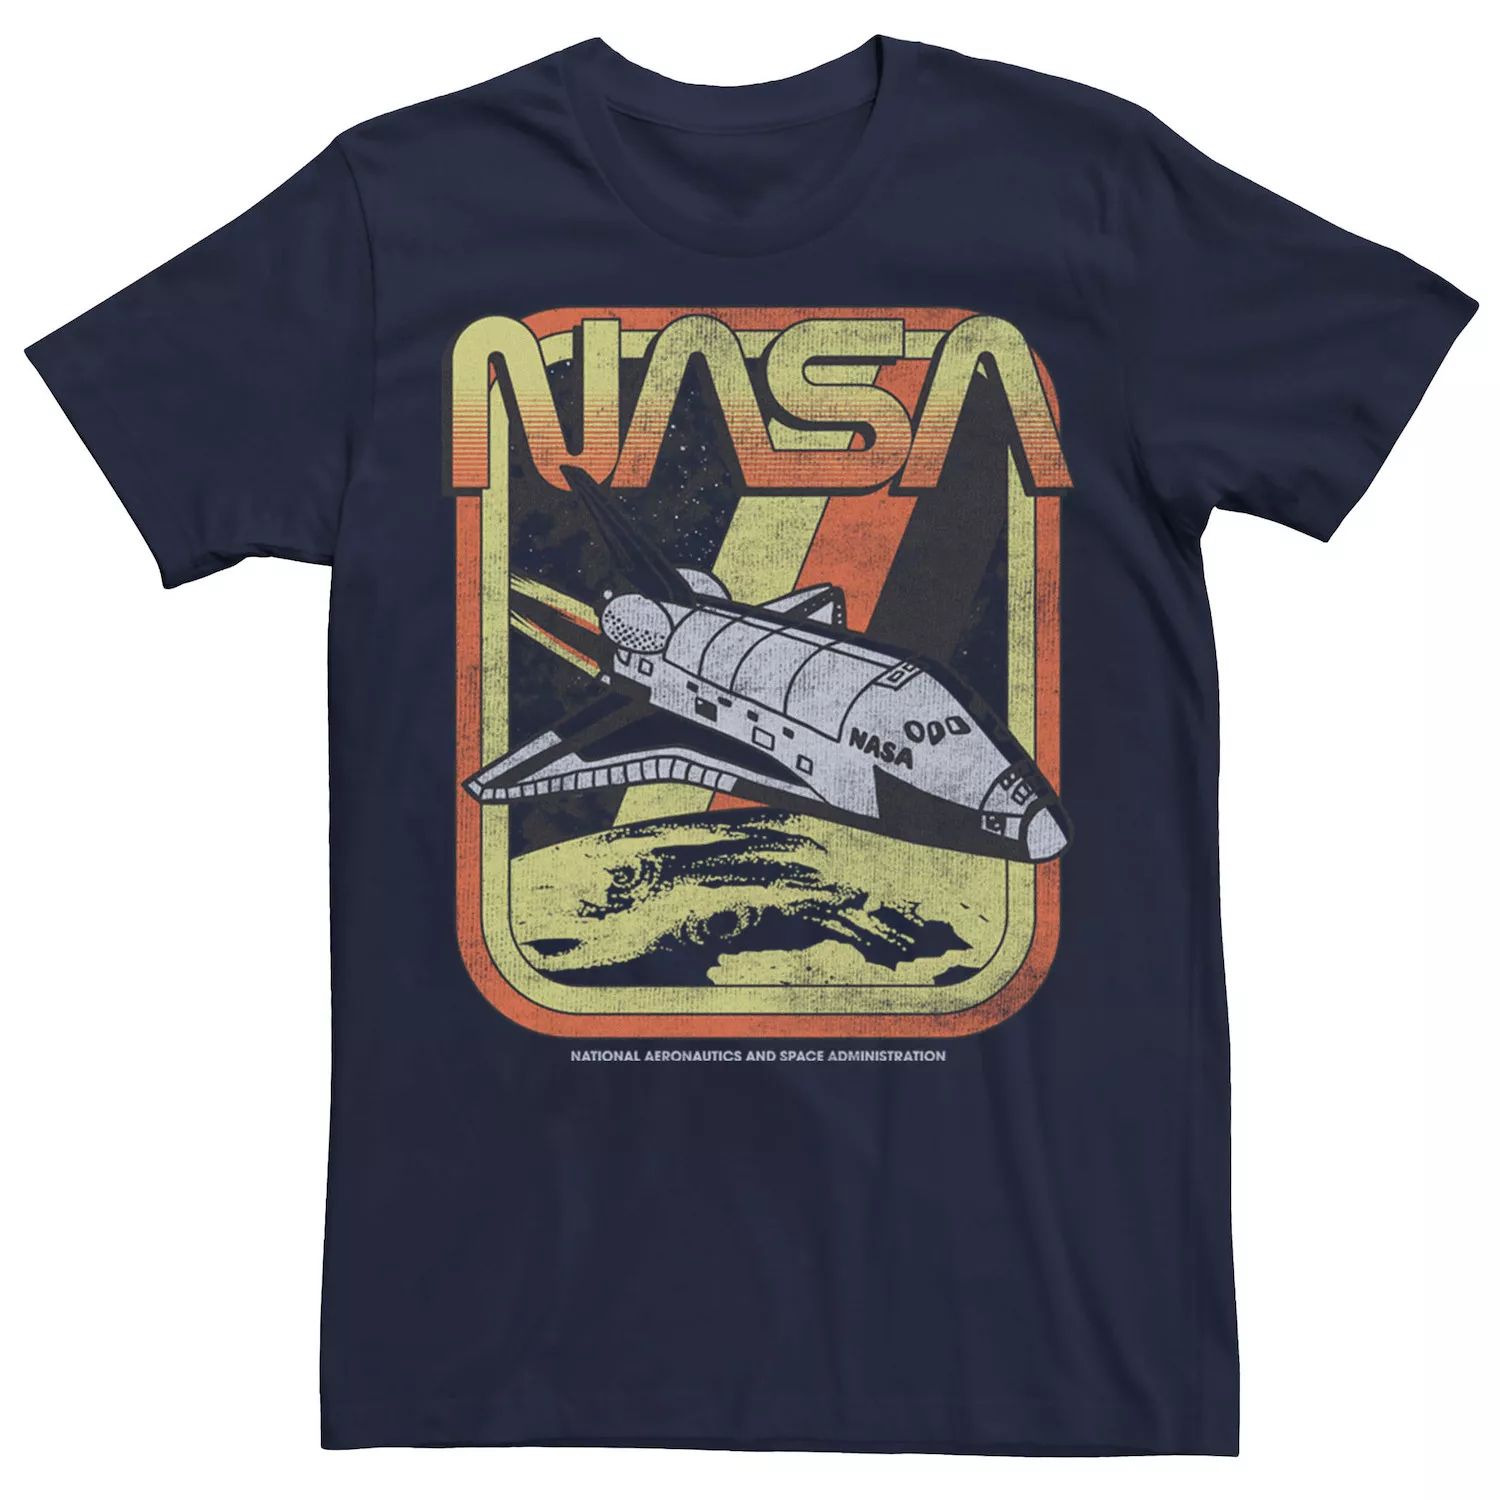 Мужская футболка с плакатом в стиле ретро NASA Licensed Character